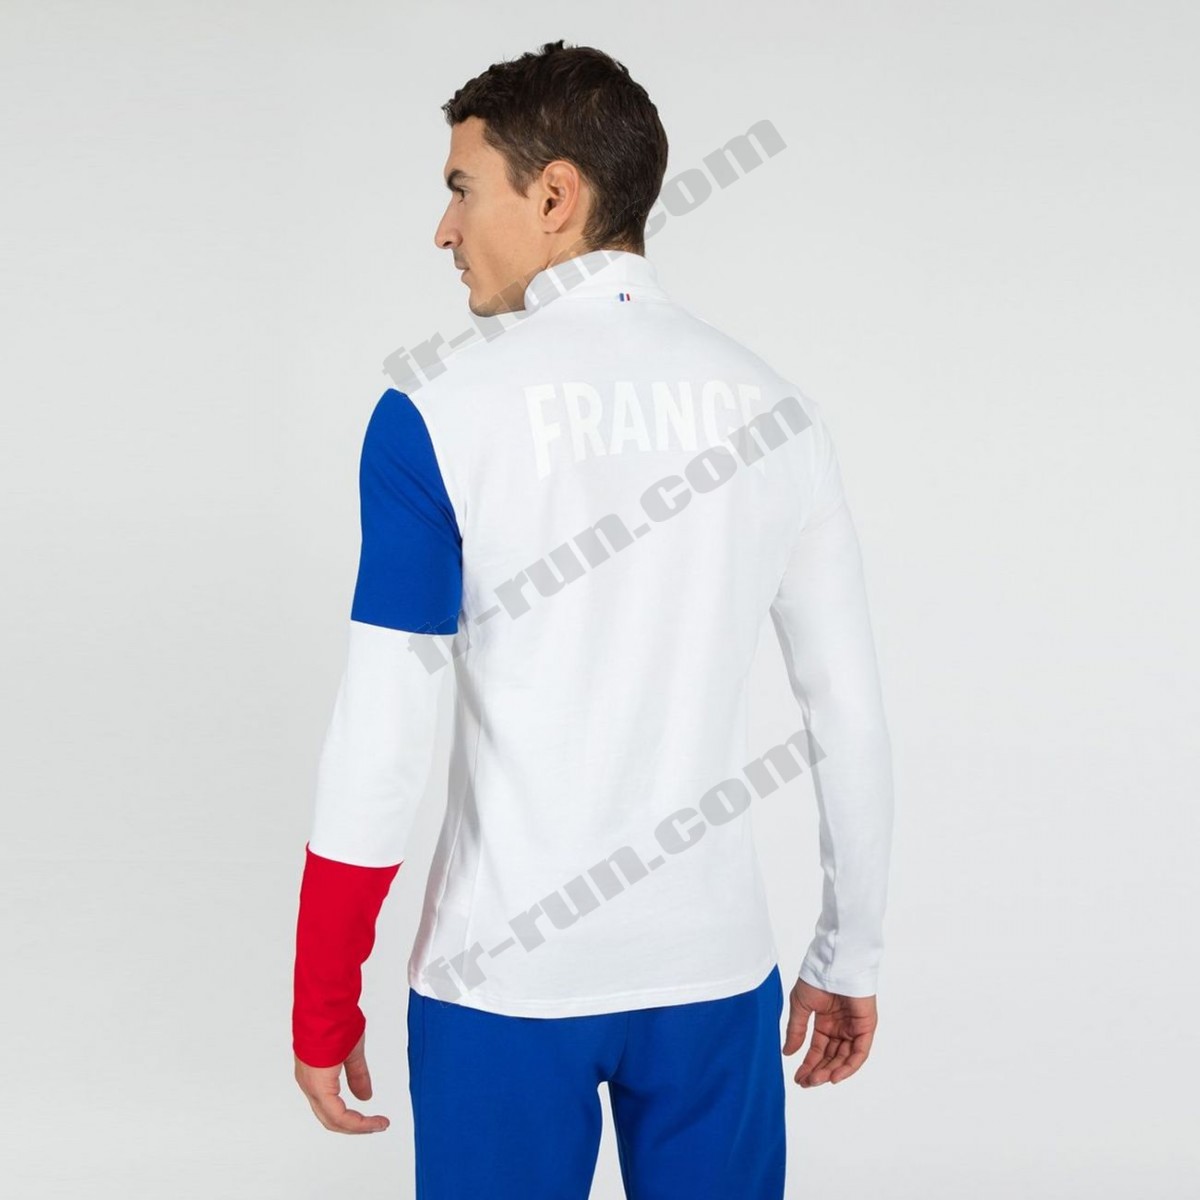 Le Coq Sportif/running adulte LE COQ SPORTIF T-shirt manches longues Équipe de France Olympique Unisexe √ Nouveau style √ Soldes - -12